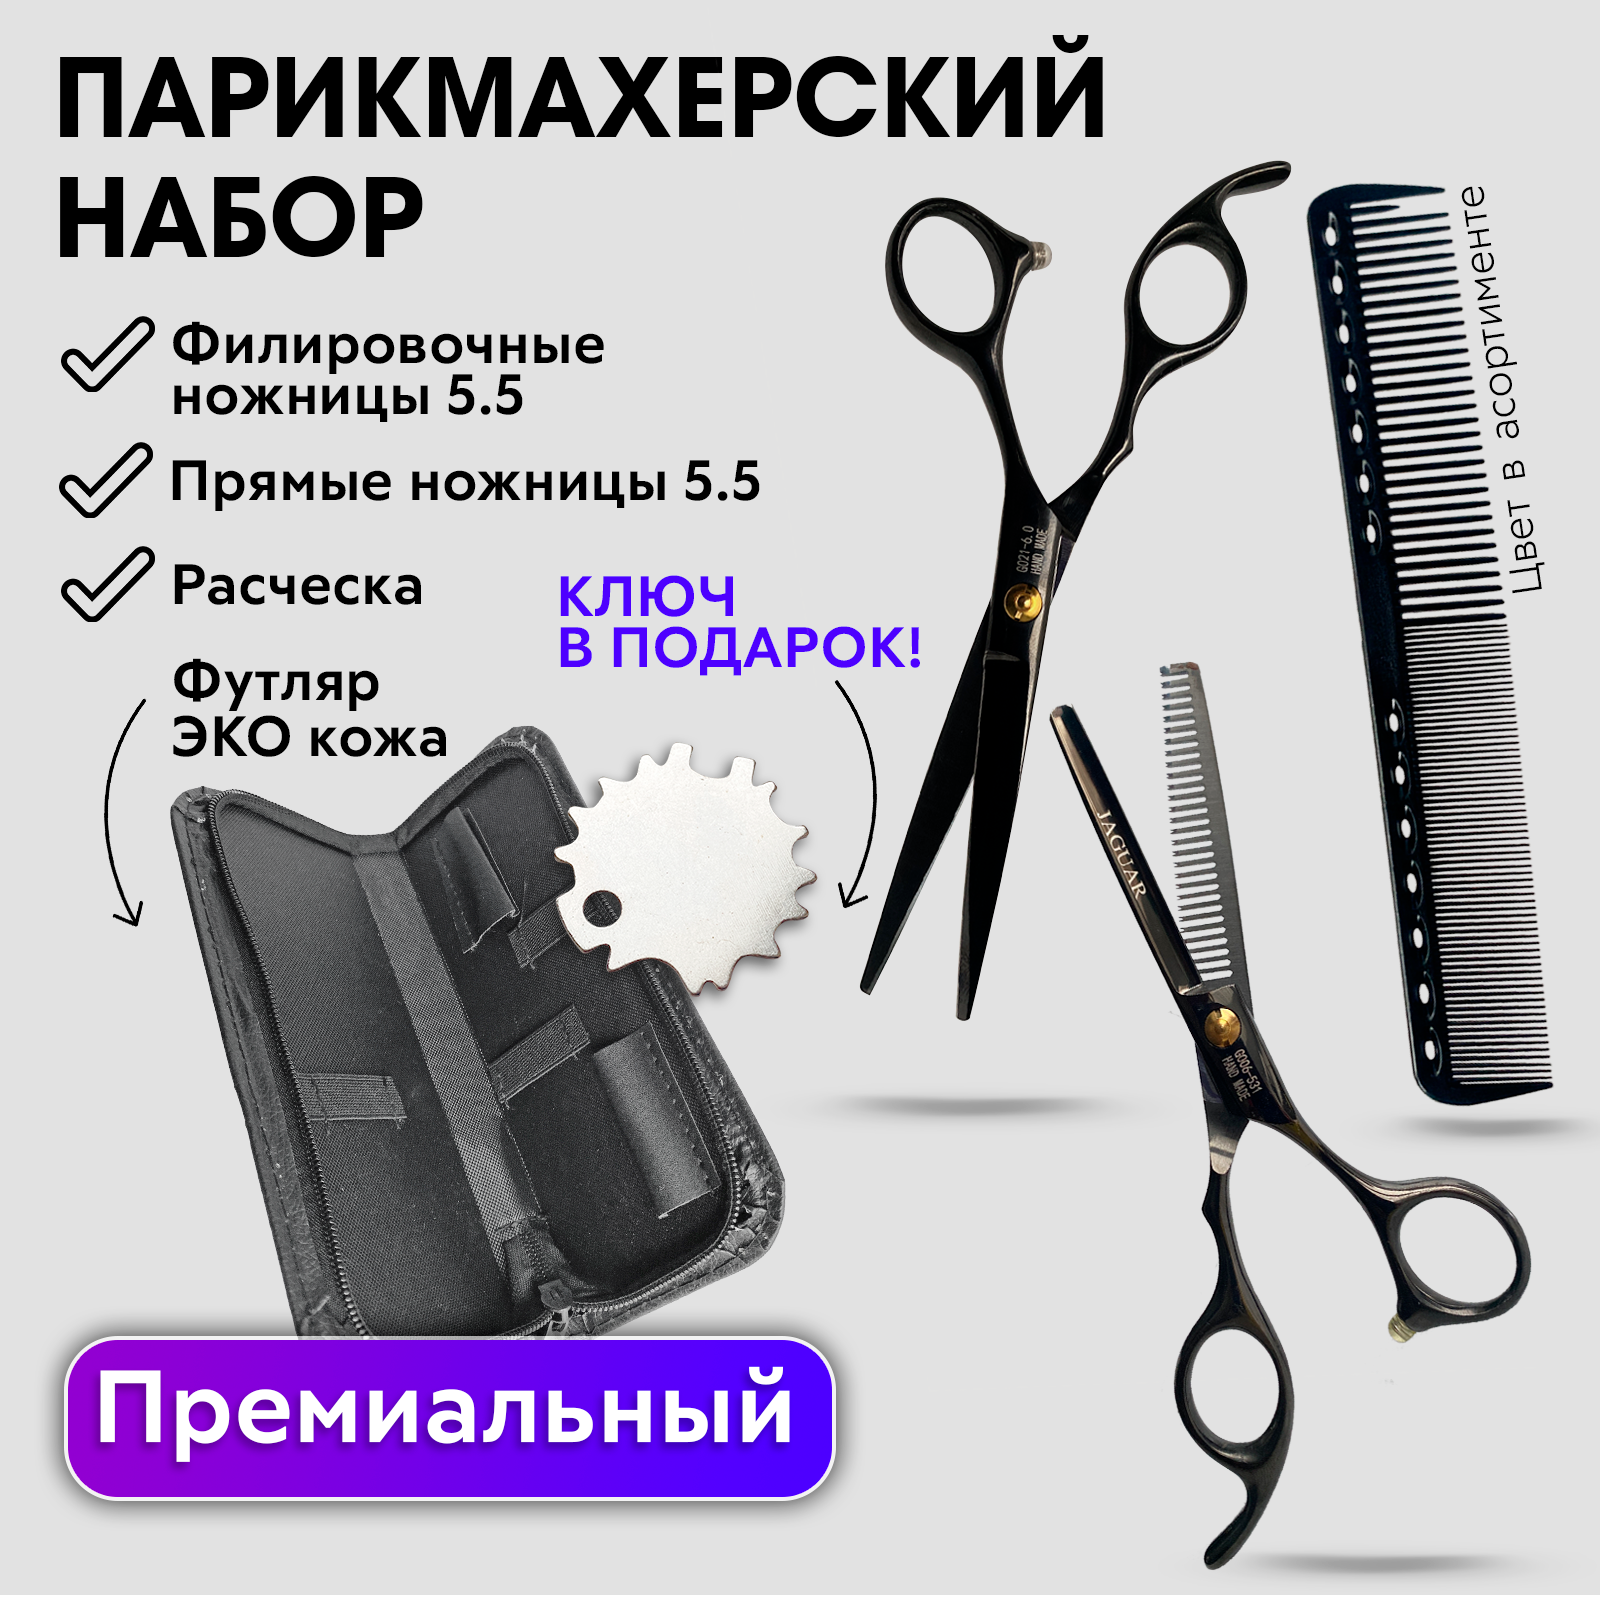 Набор Hожницы парикмахерские прямые Charites ножницы филировочные размер 5.5 черные+1485 набор детской косметики и аксессуаров самой красивой